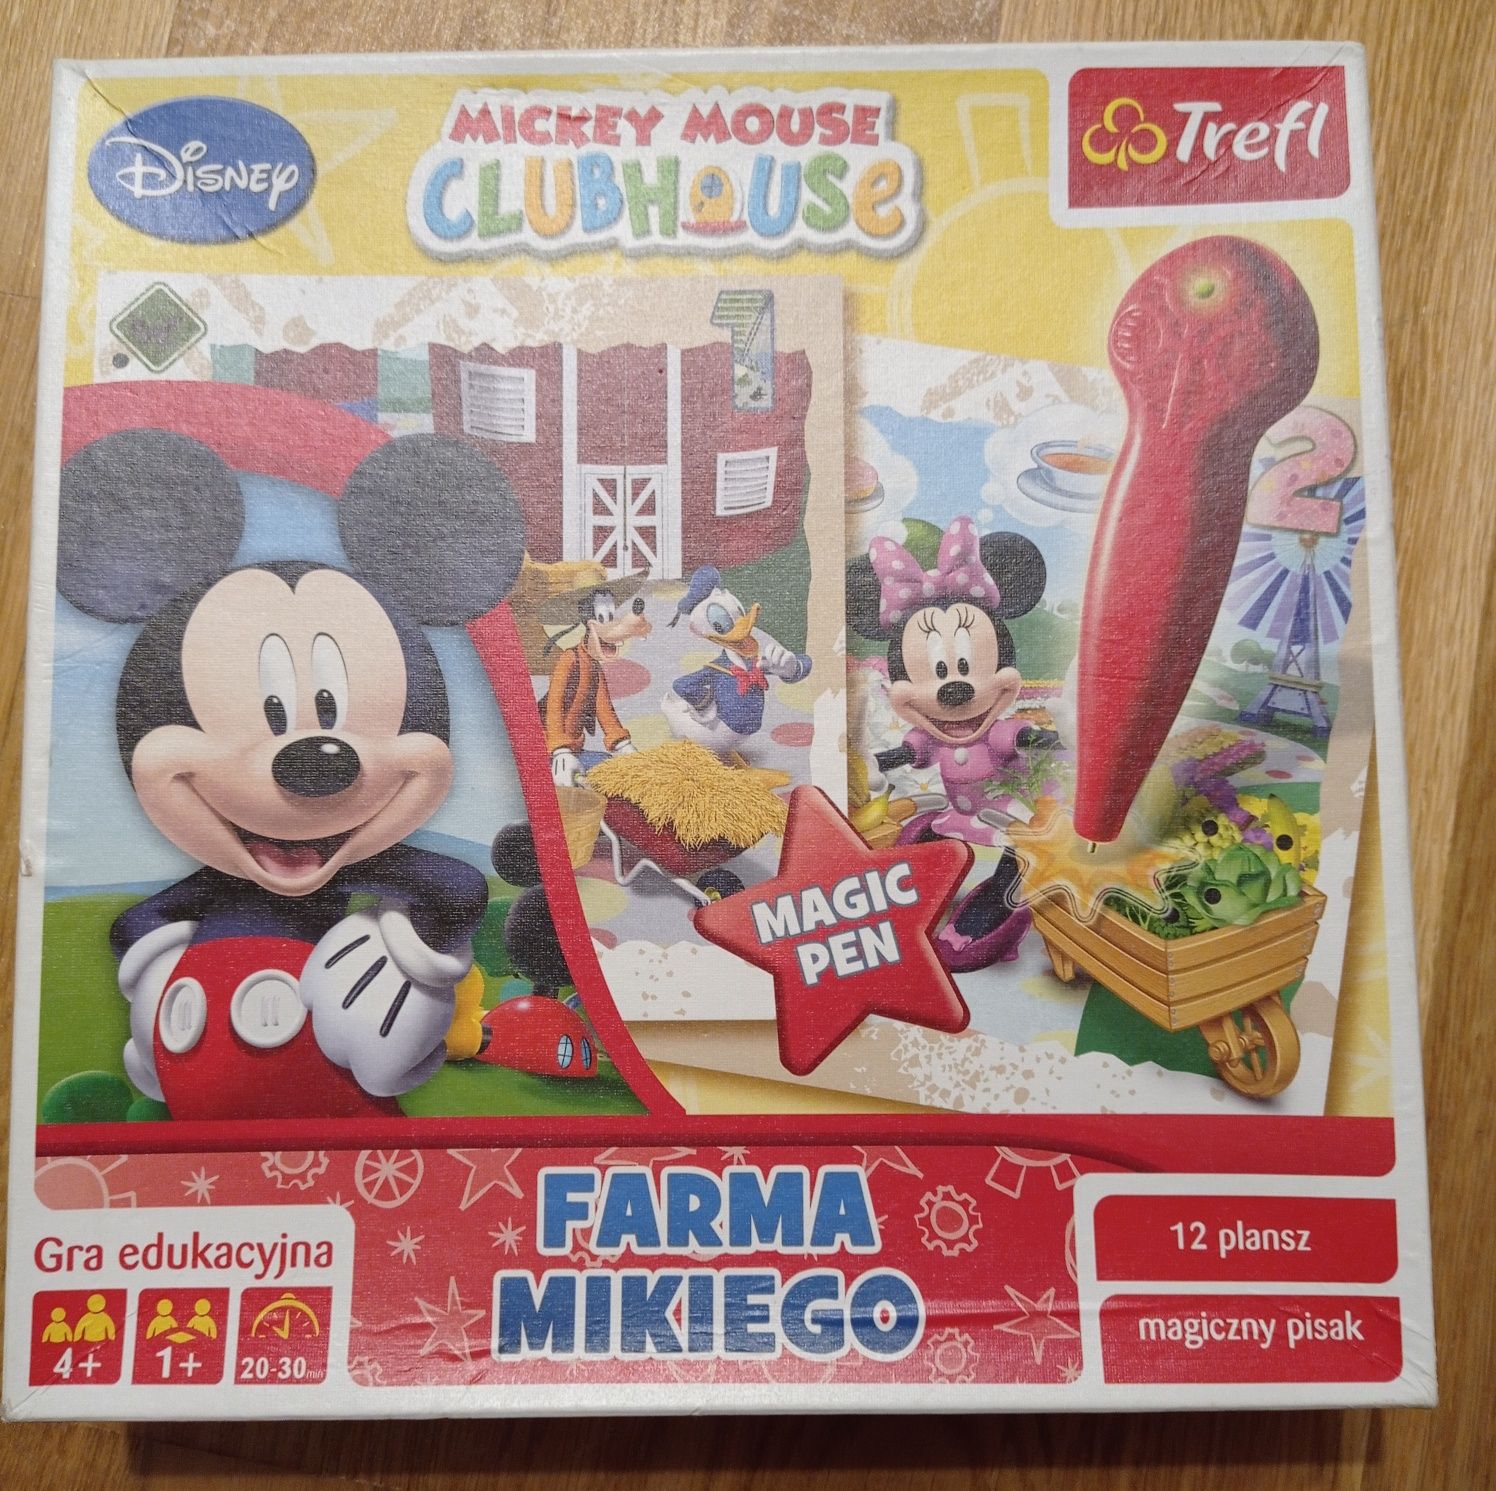 Trefl Mickey Mouse Club House Farma Mikiego plansze+magiczny długopis